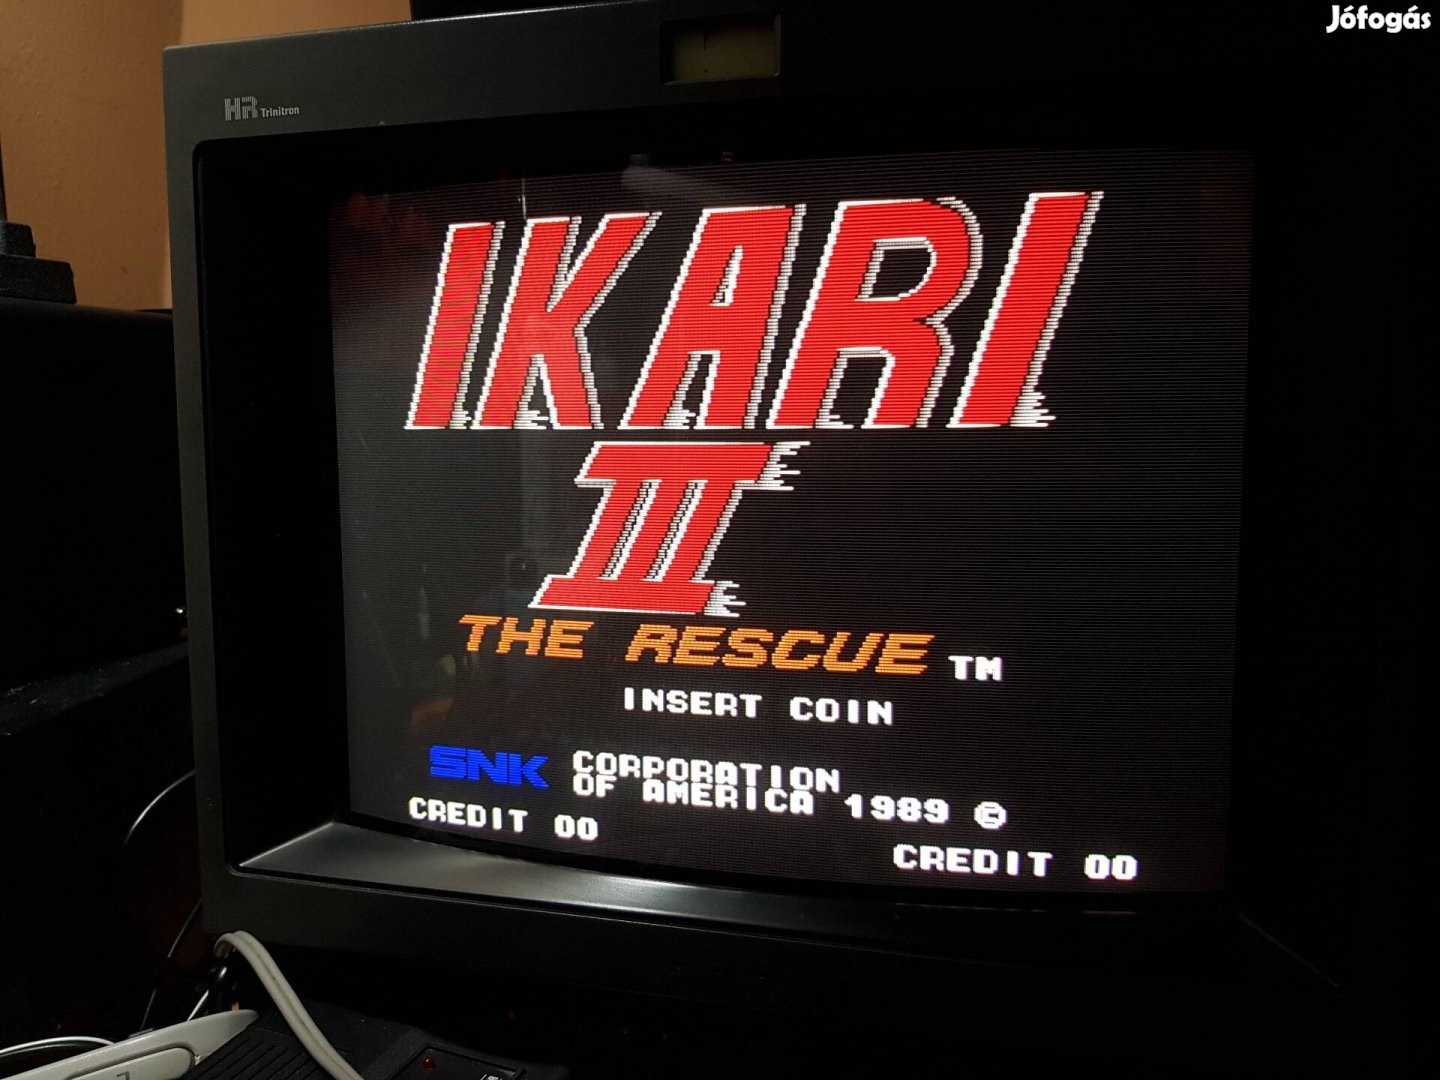 Ikari 3 The Rescue Ikari Warriors jamma arcade játékgép videojáték snk